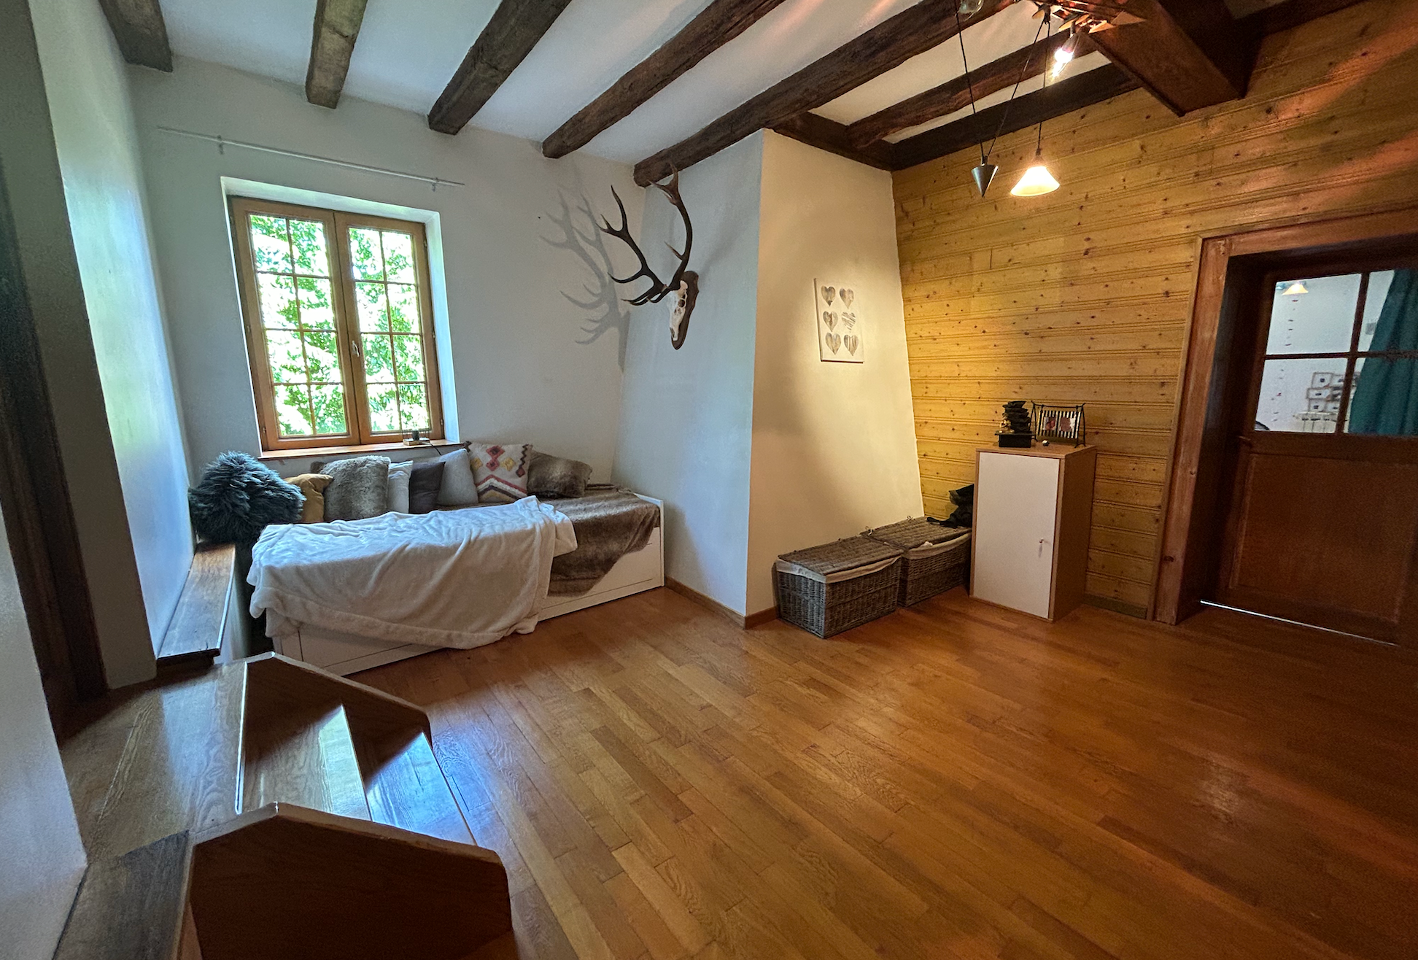 Hôte GreenGo: Chambre cocooning dans les Vosges - Image 4